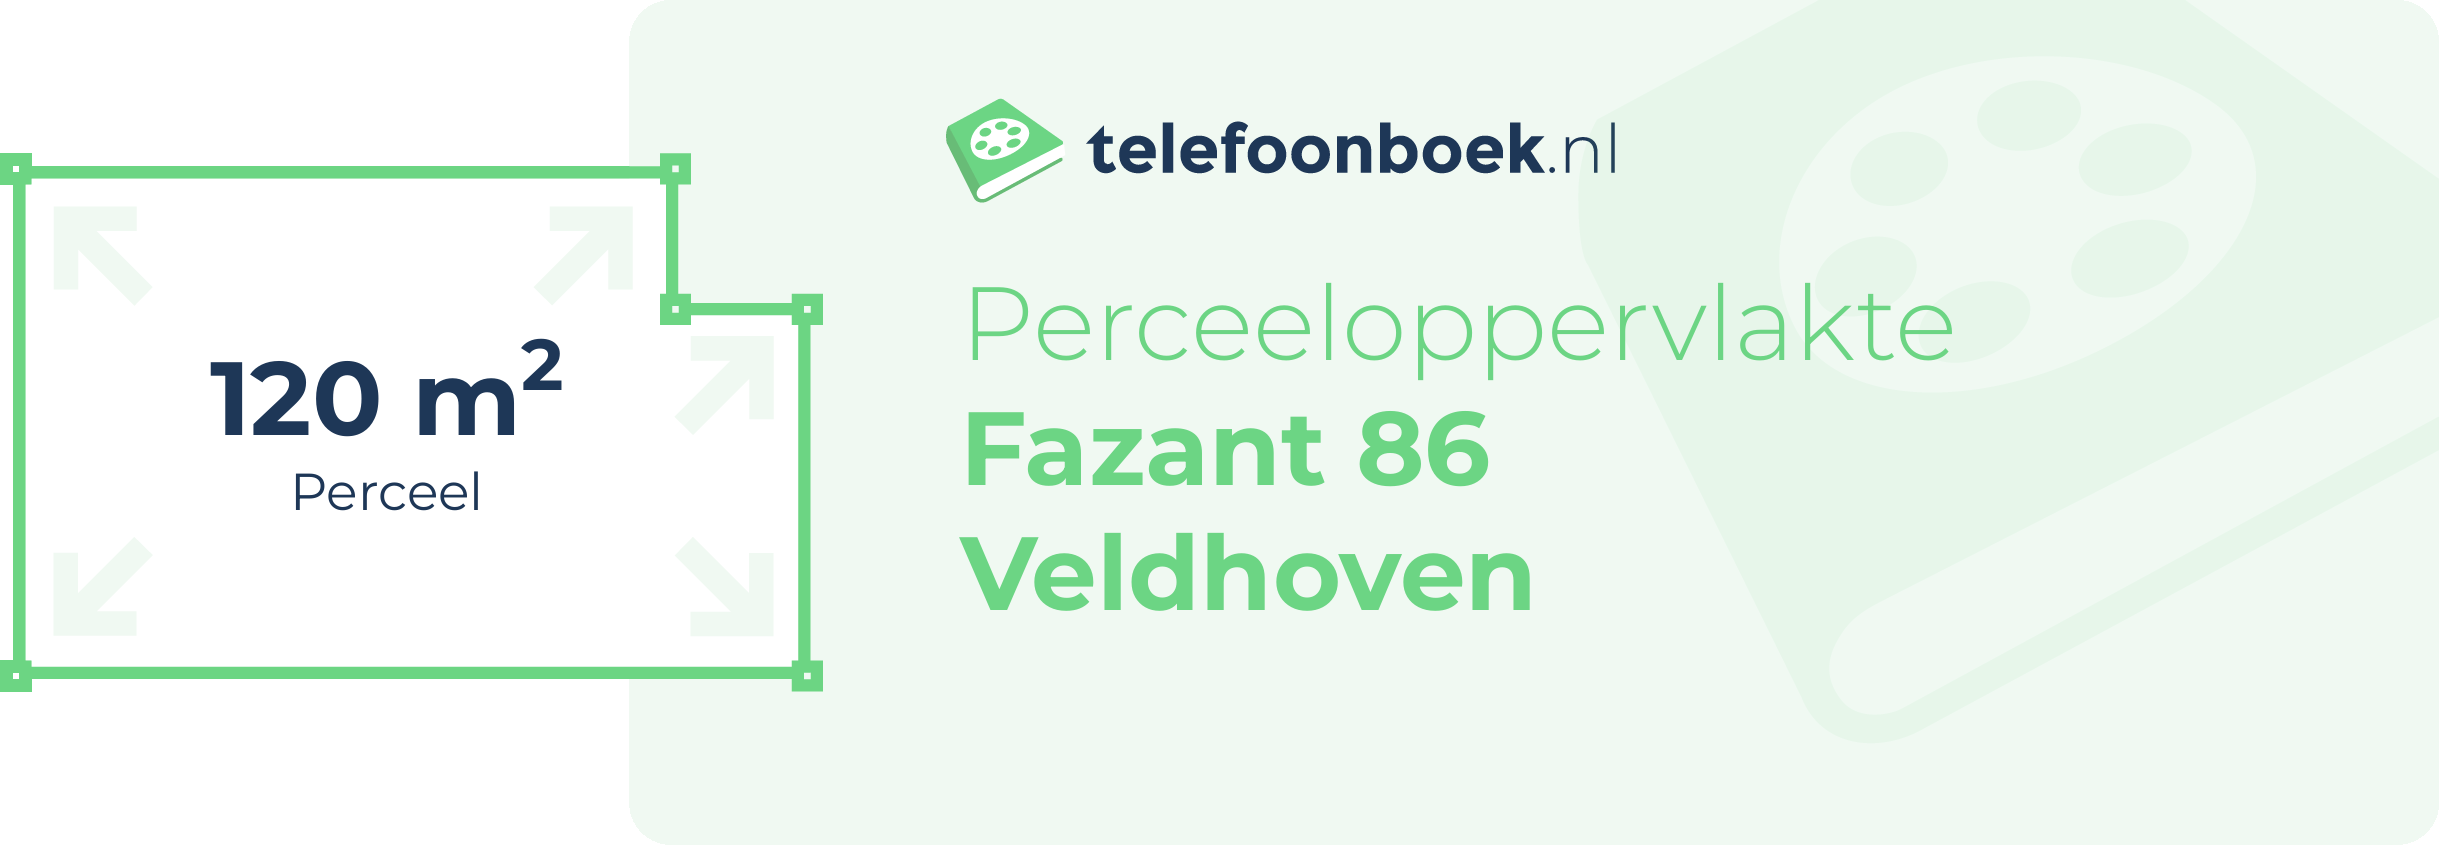 Perceeloppervlakte Fazant 86 Veldhoven